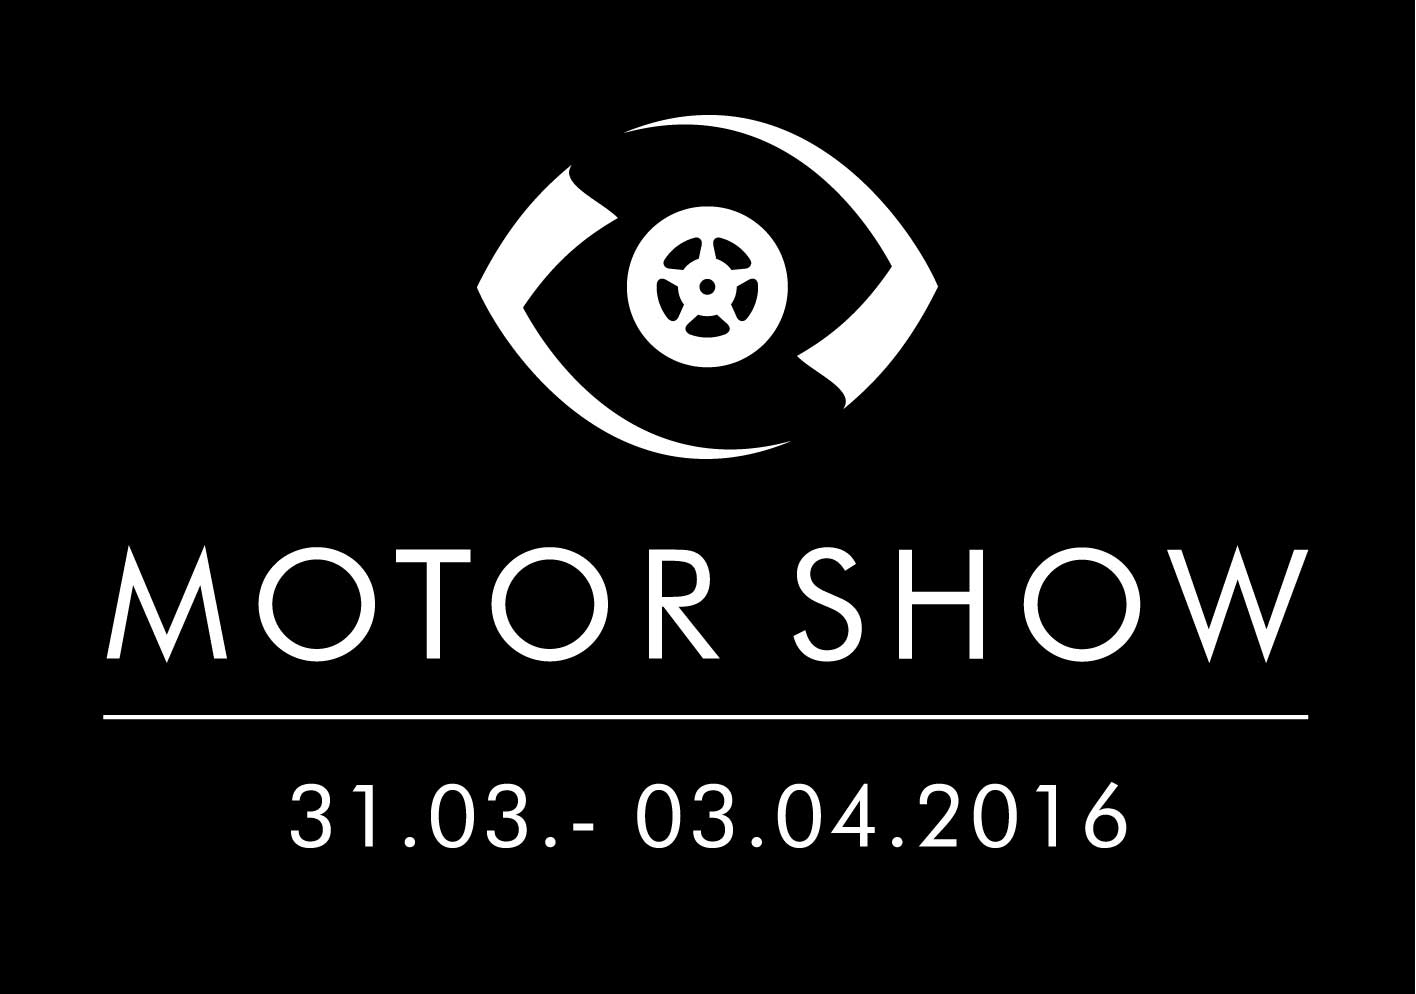 Targi Motor-Show 2016 rozpoczynają się już 31 marca! – główne zdjęcie